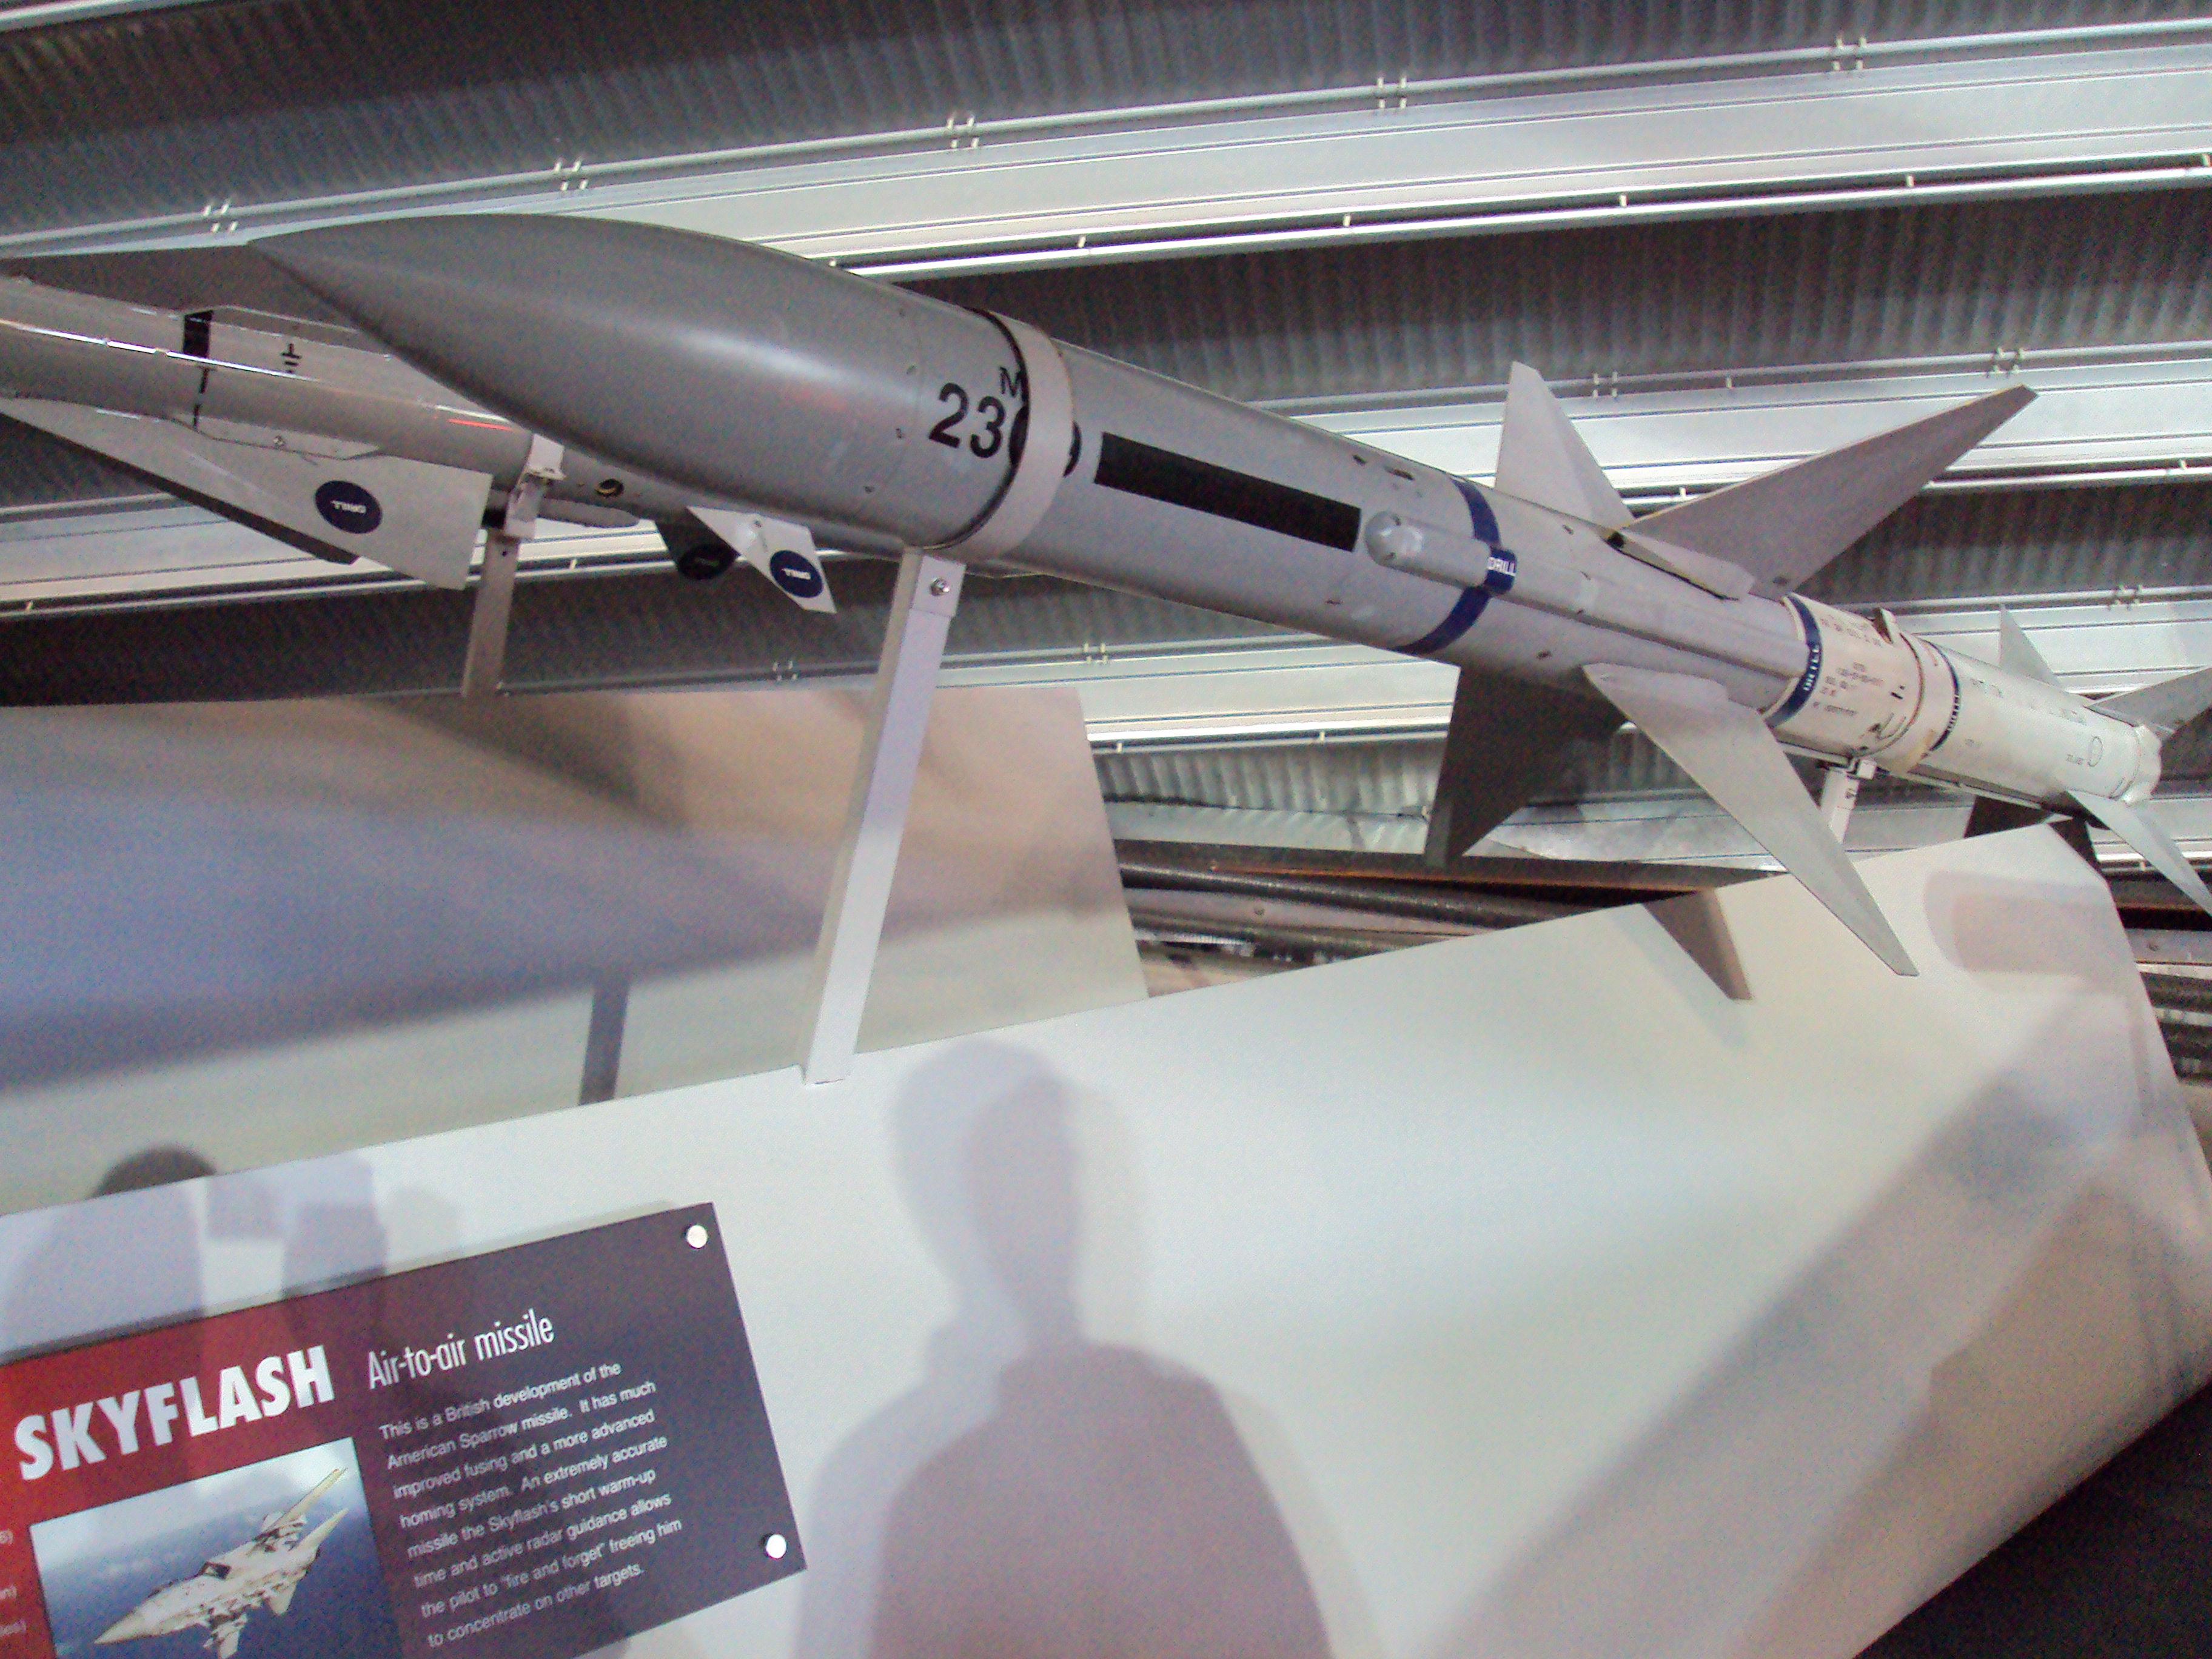 Skyflash missile